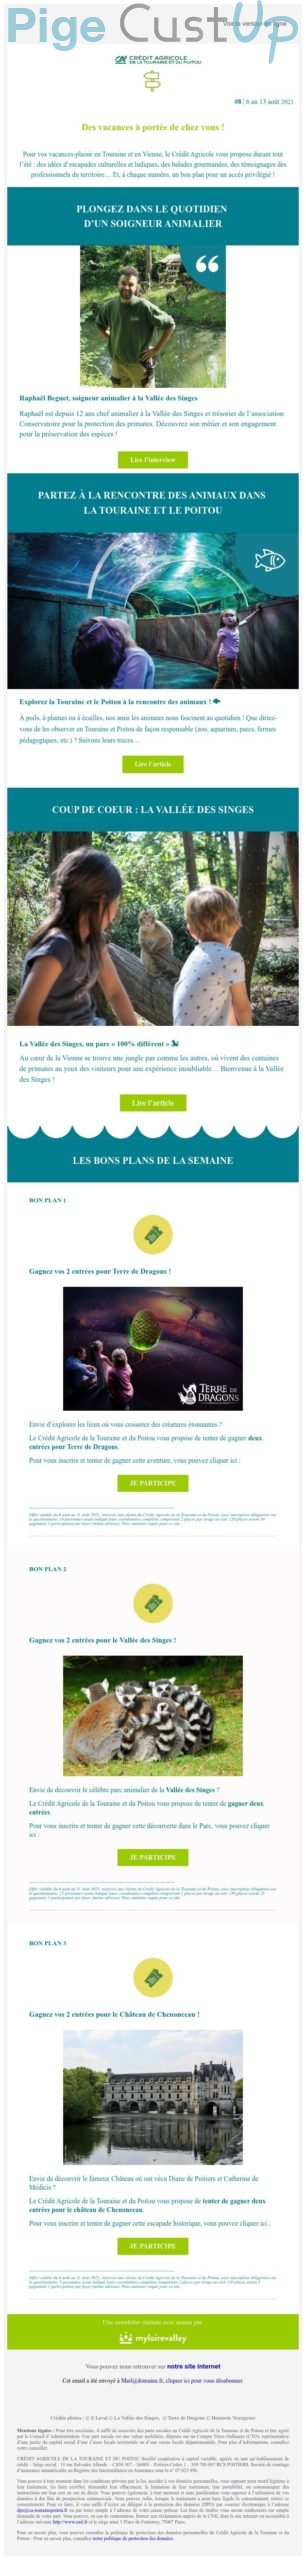 Exemple de Type de media  e-mailing - Crédit Agricole - Marketing Acquisition - Jeu promo - Marketing relationnel - Newsletter